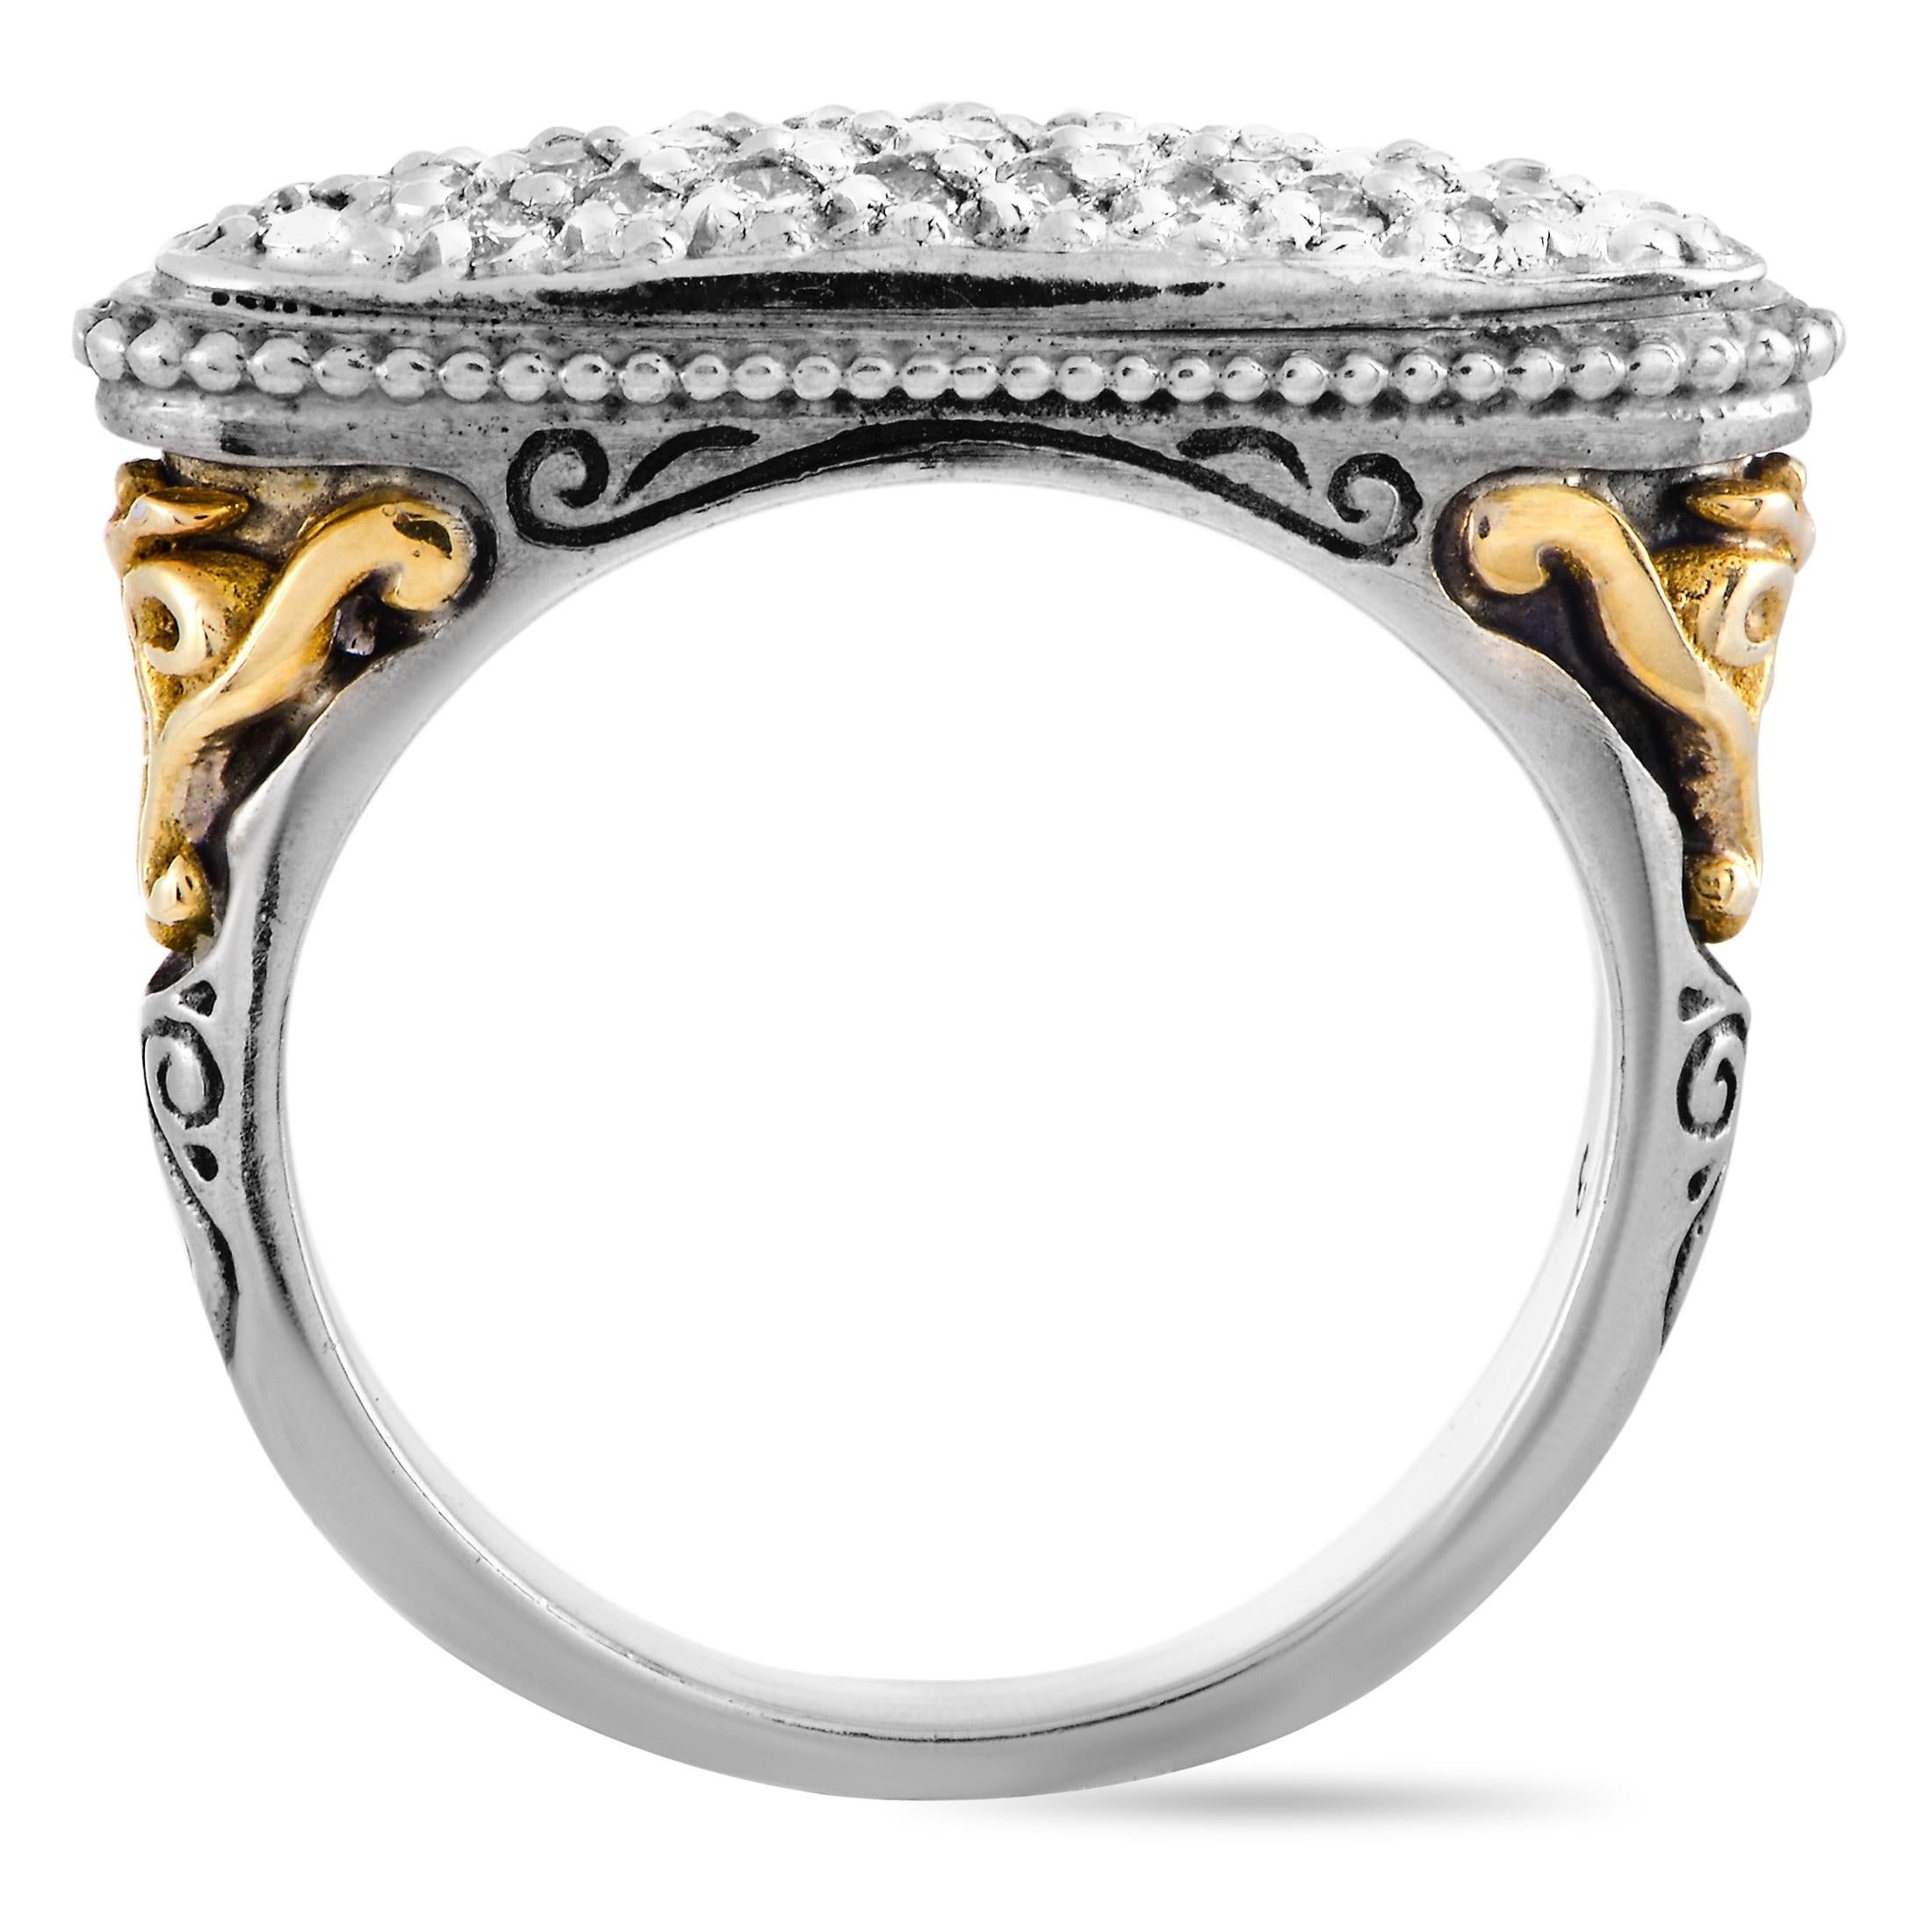 Dieser Konstantino Ring ist aus 18 Karat Gelbgold und Sterlingsilber gefertigt und wiegt 8,1 Gramm. Er ist mit Diamantsteinen von insgesamt 0,40 Karat besetzt. Der Ring hat eine Bandstärke von 2 mm und eine Höhe von 5 mm, während die Oberseite 7 x